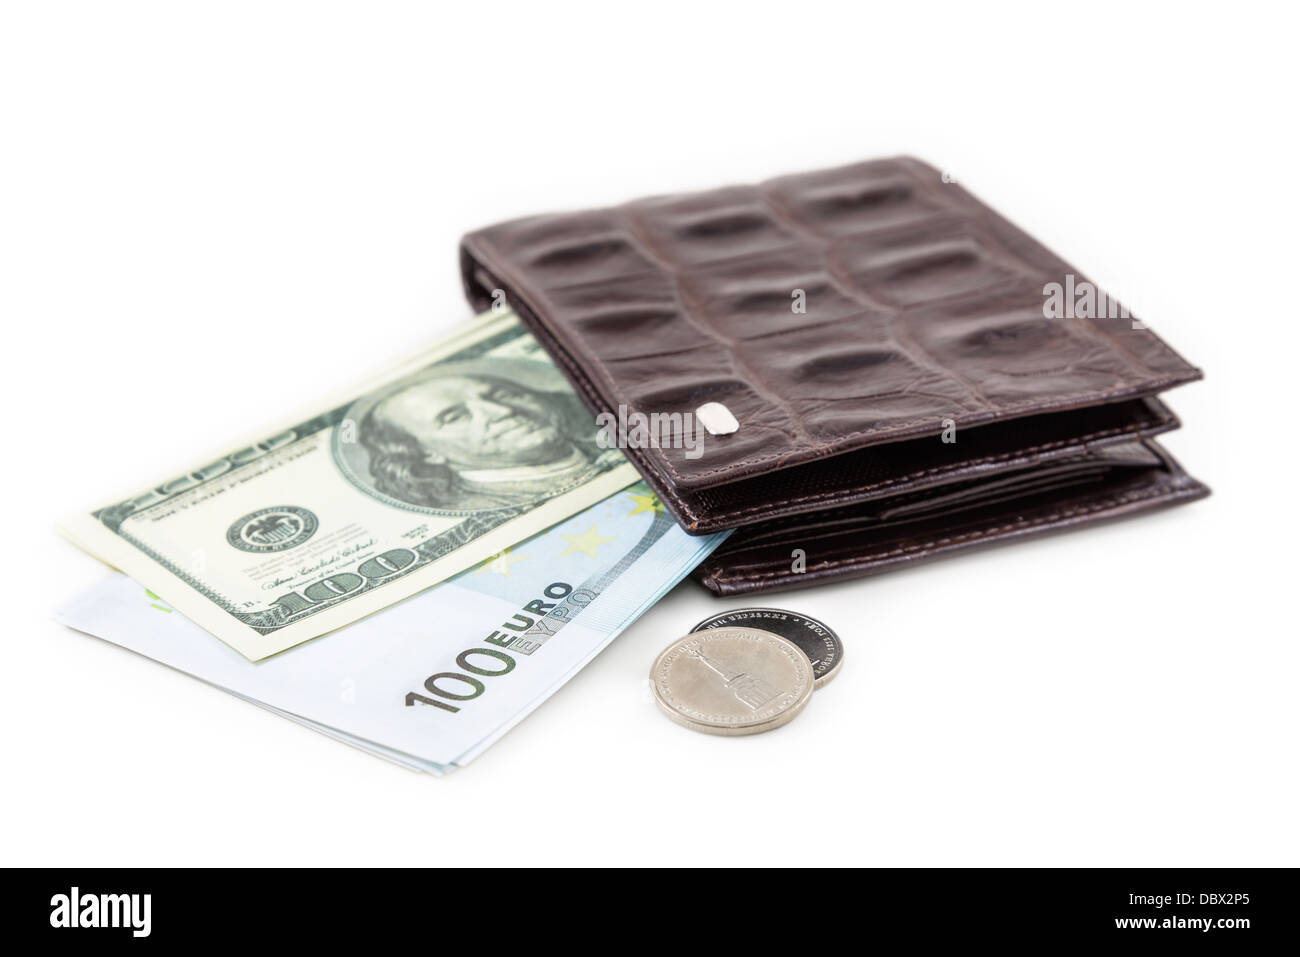 Il marrone del portafoglio in pelle con euro e dollaro è fotografato su close-up Foto Stock